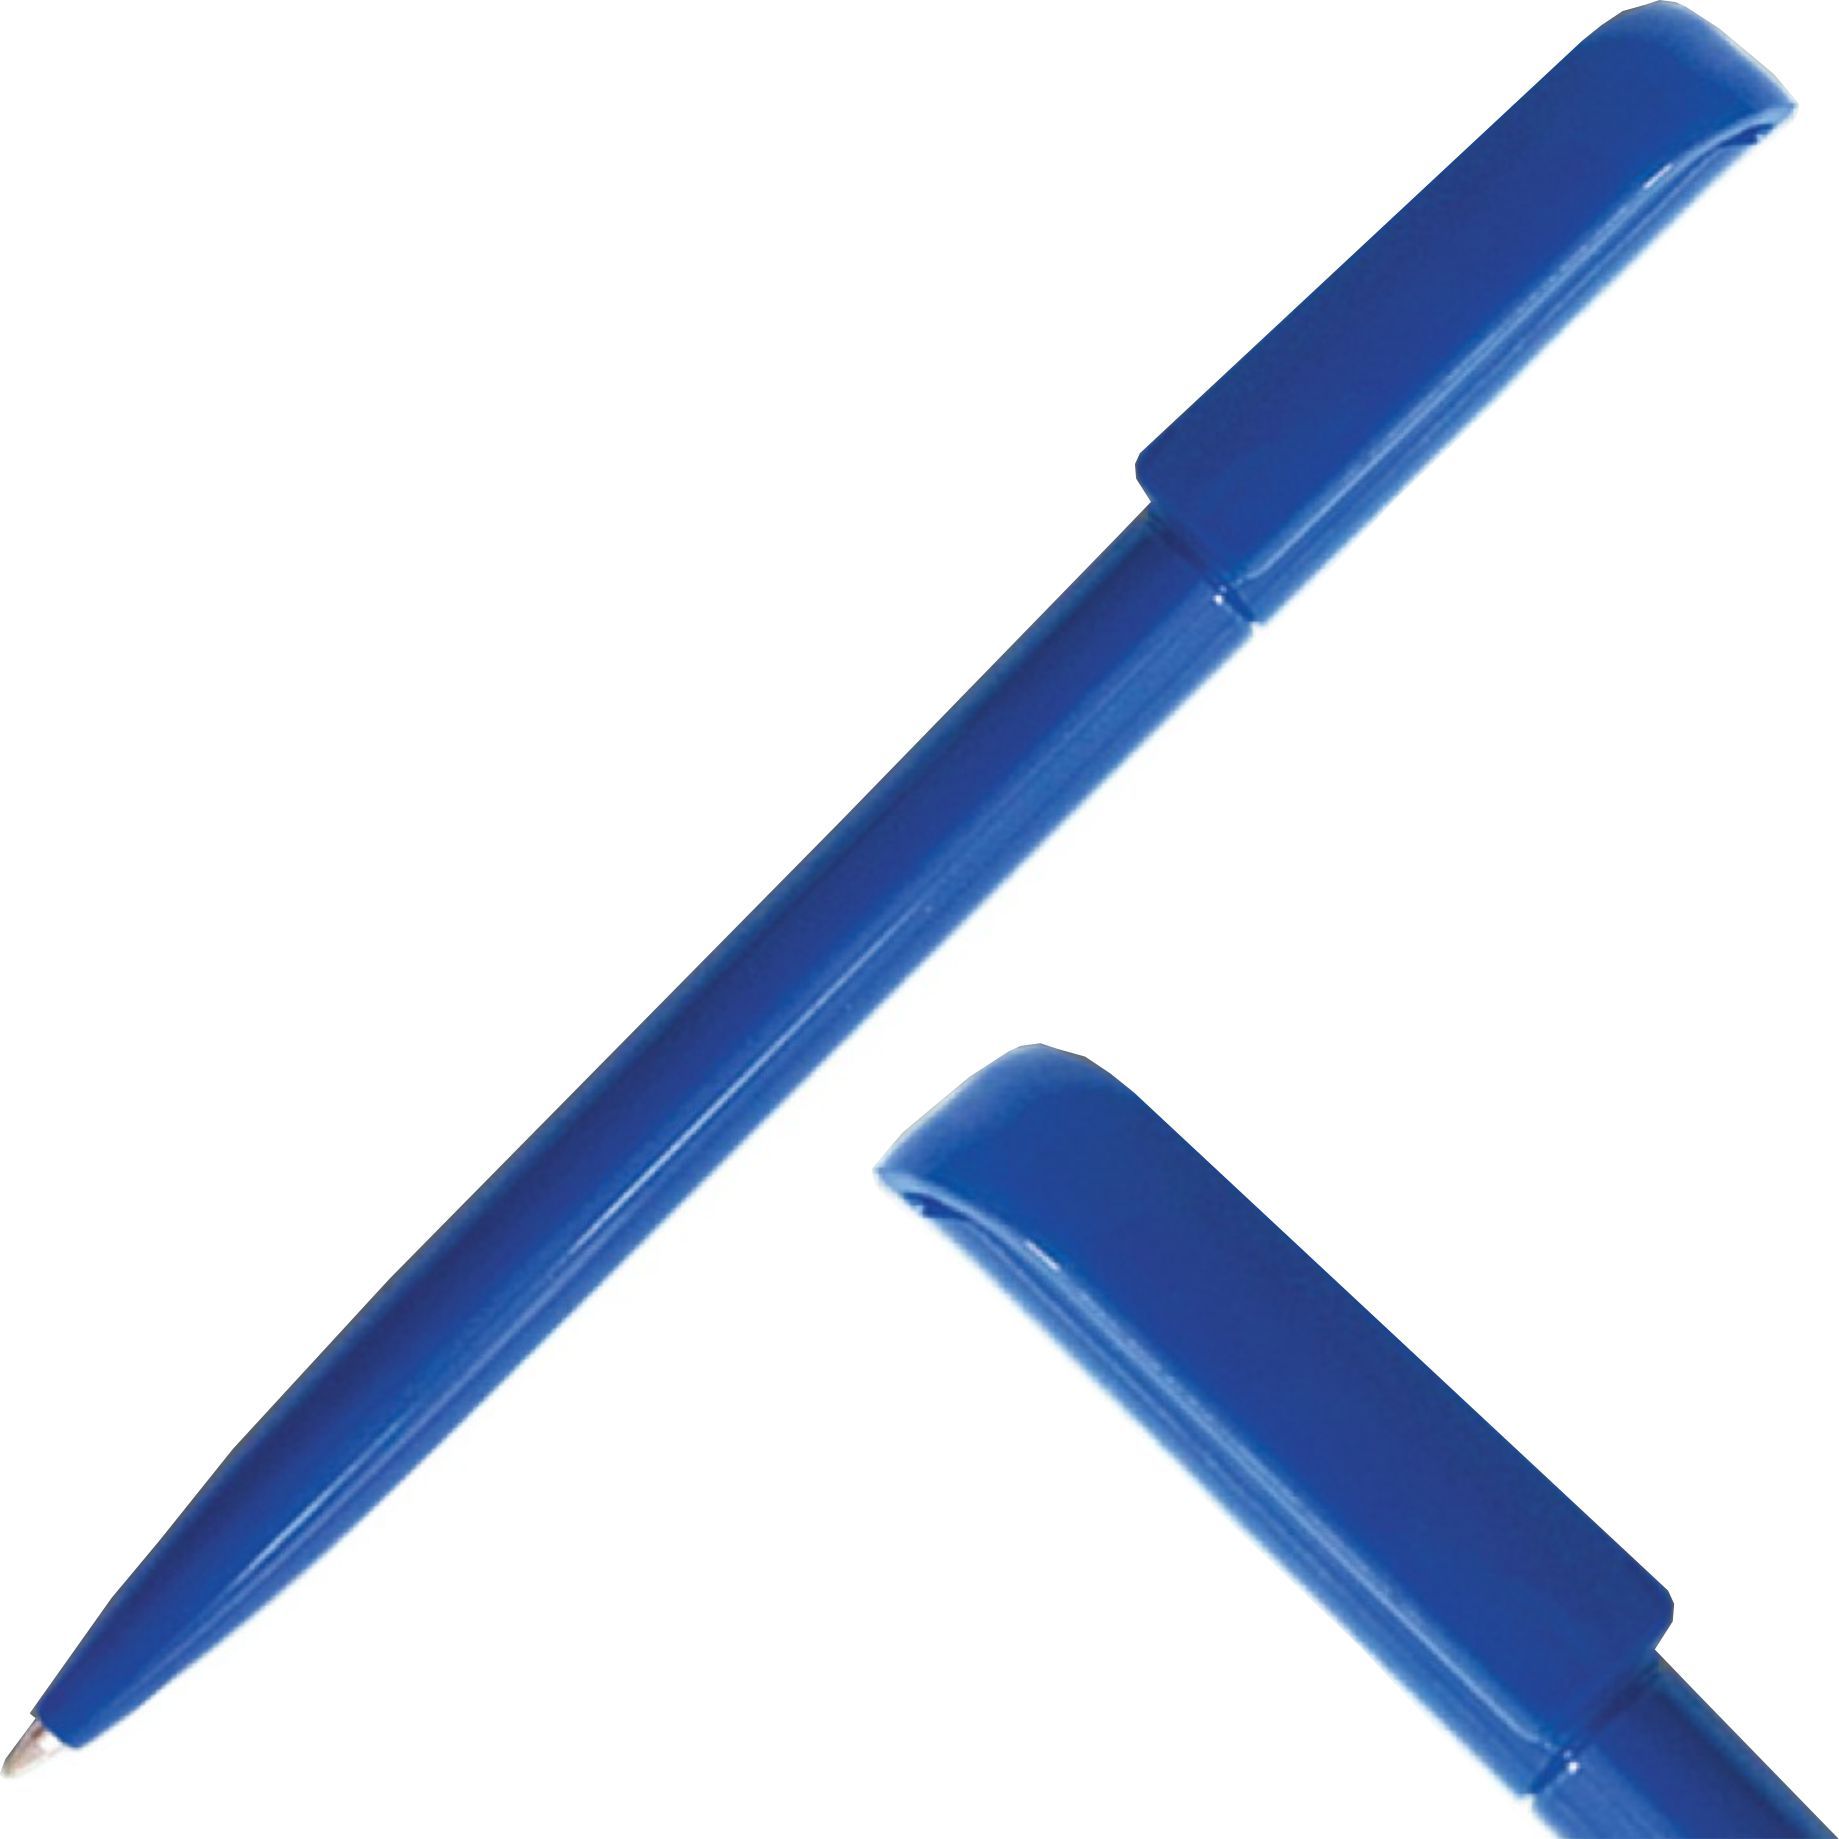 Вые ручки. Ручка Carolina темно-синяя.